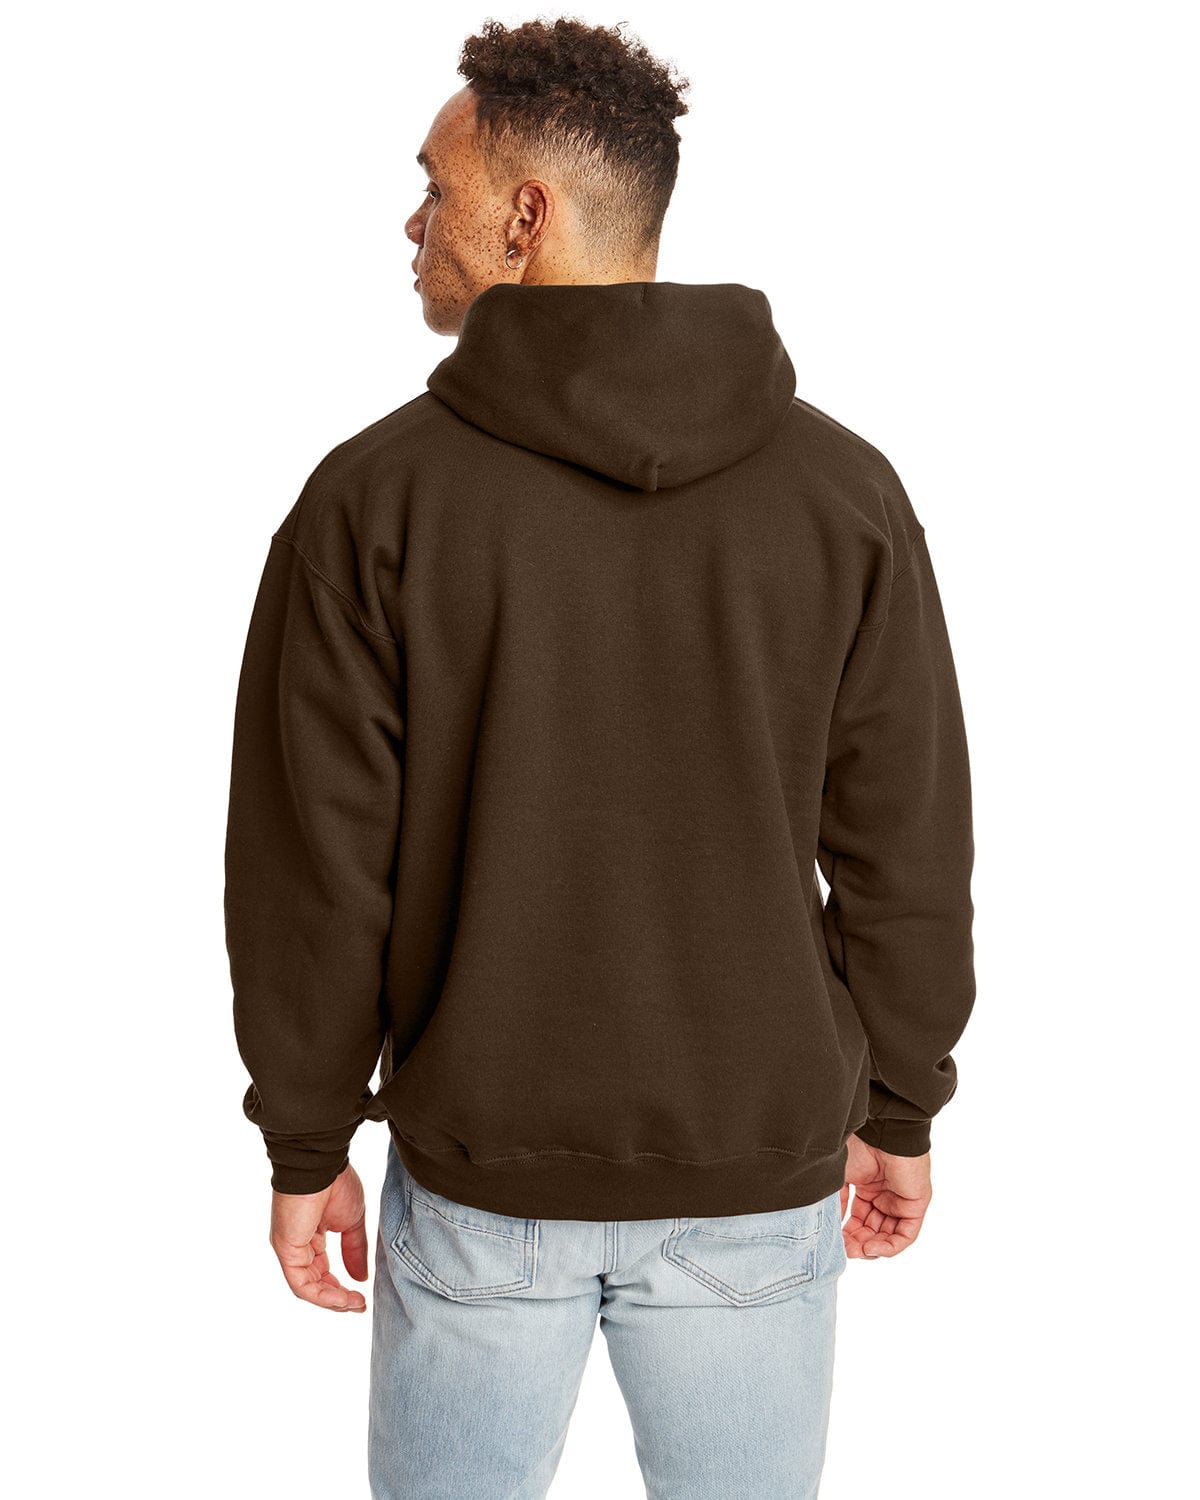 Hanes Ultimate Cotton Fleece Full-zip Men's Hooded Sweatshirt - Dark  Chocolate - XX-Large